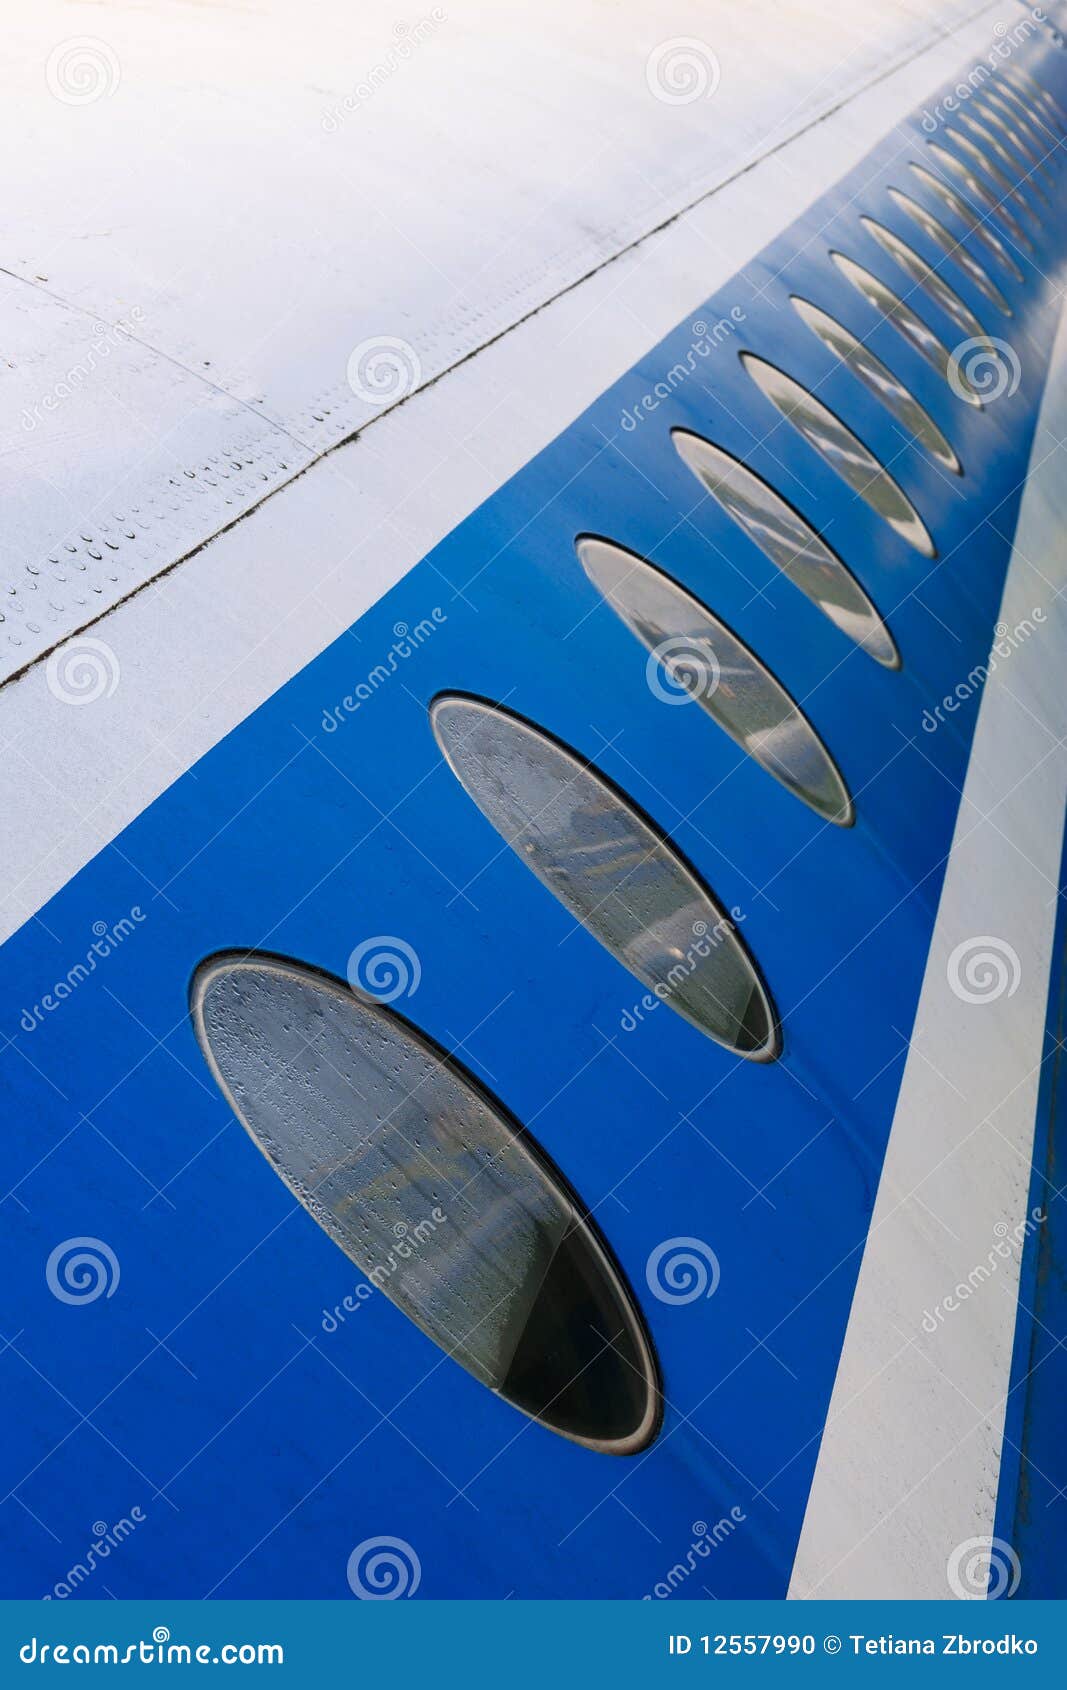 illuminators on fuselage